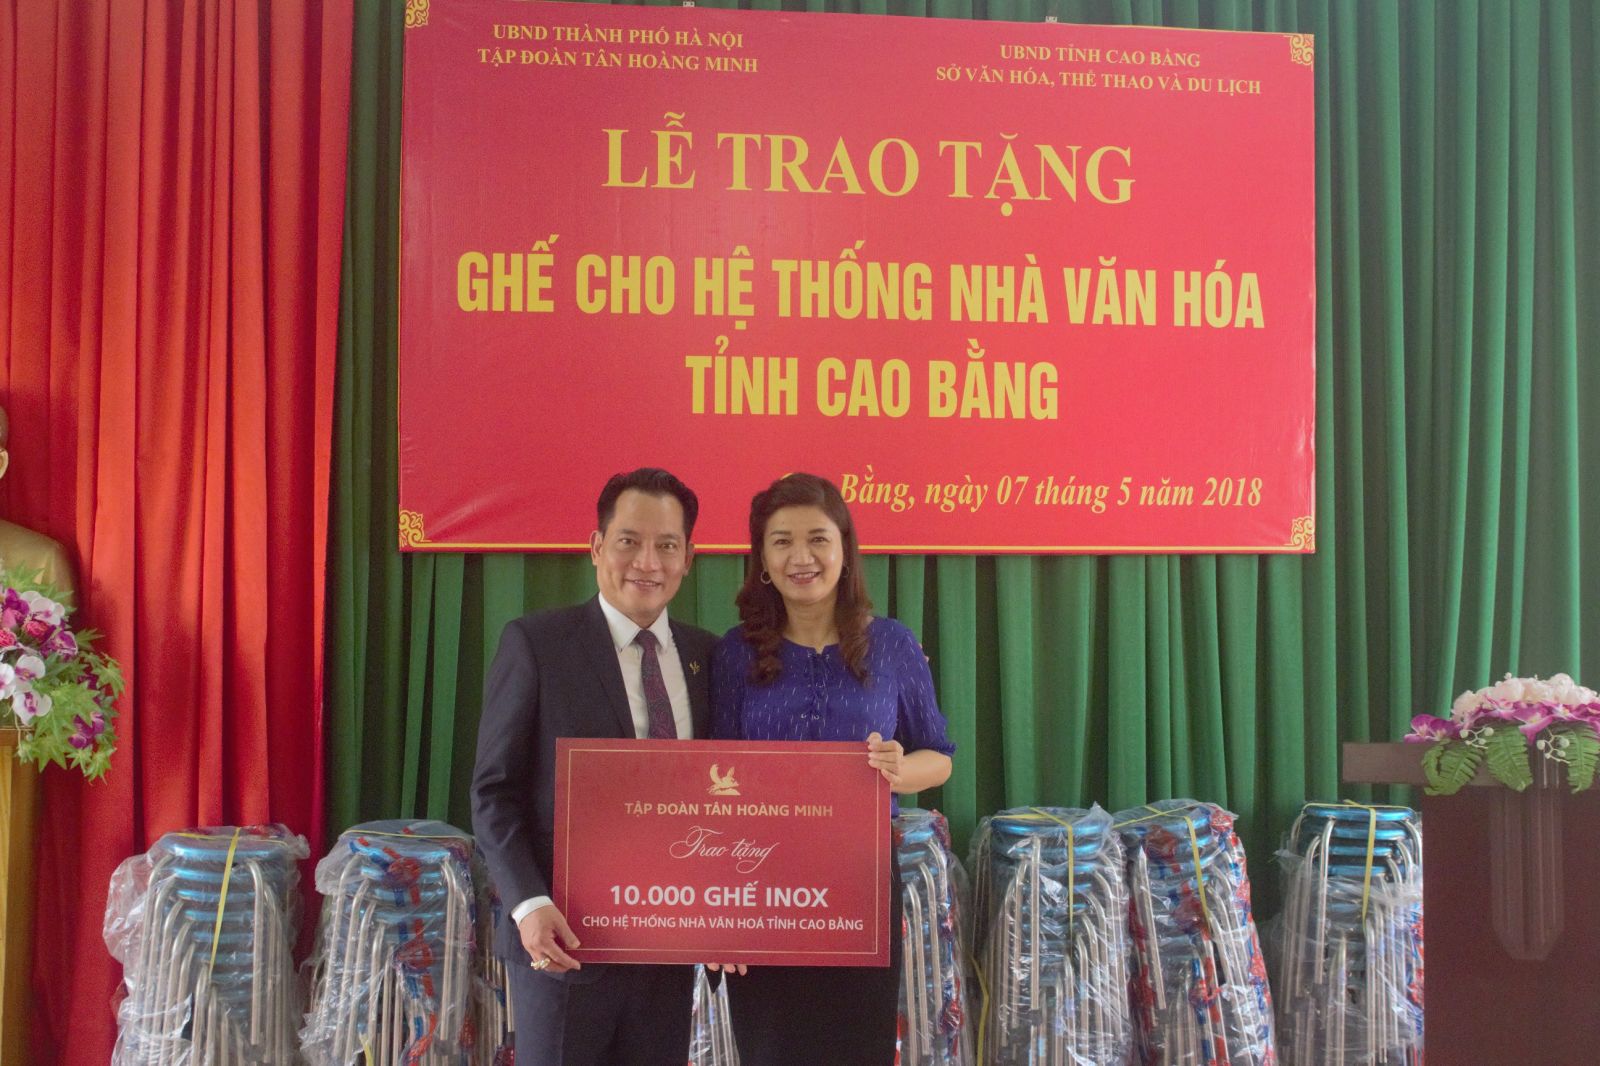 Ông Trần Hồng Sơn – Phó Tổng Giám đốc Tân Hoàng Minh trao tặng 10.000 ghế Inox cho Sở VHTTDL tỉnh Cao Bằng